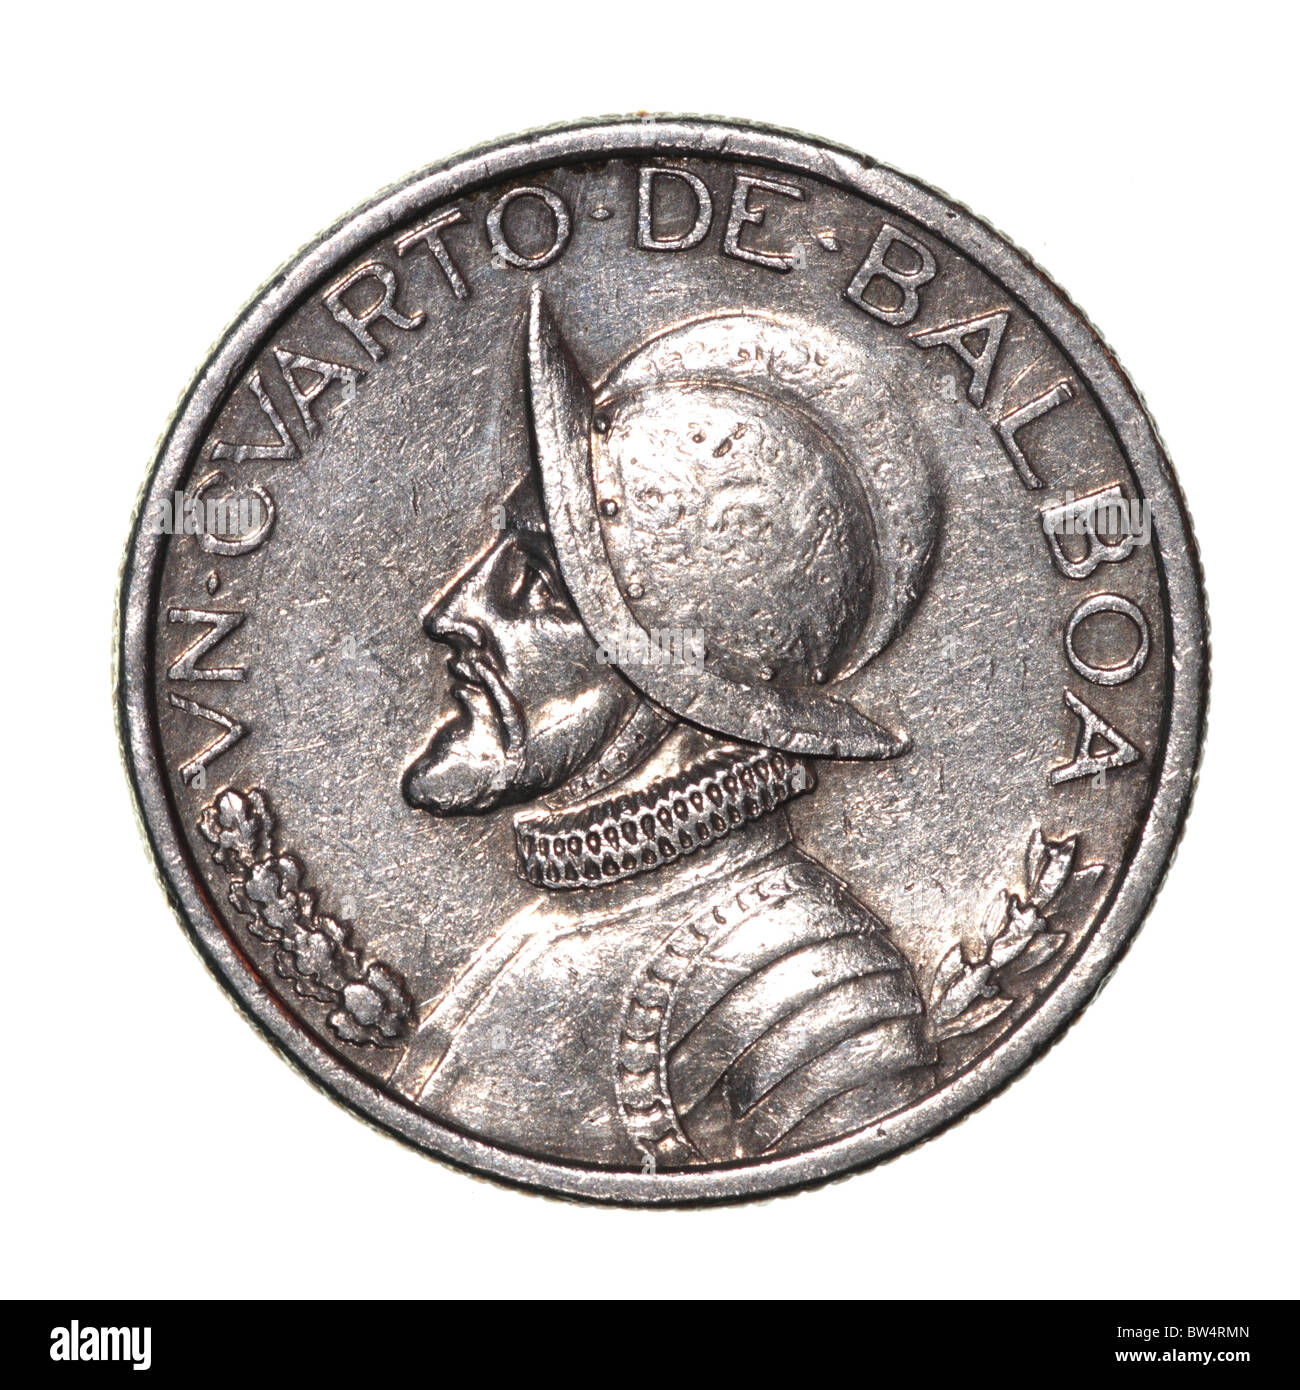 Obverse di un quartiere panamense Balboa Coin con il ritratto di Vasco Núñez de Balboa, conquistador. Immagine macro isolata su sfondo bianco. Foto Stock